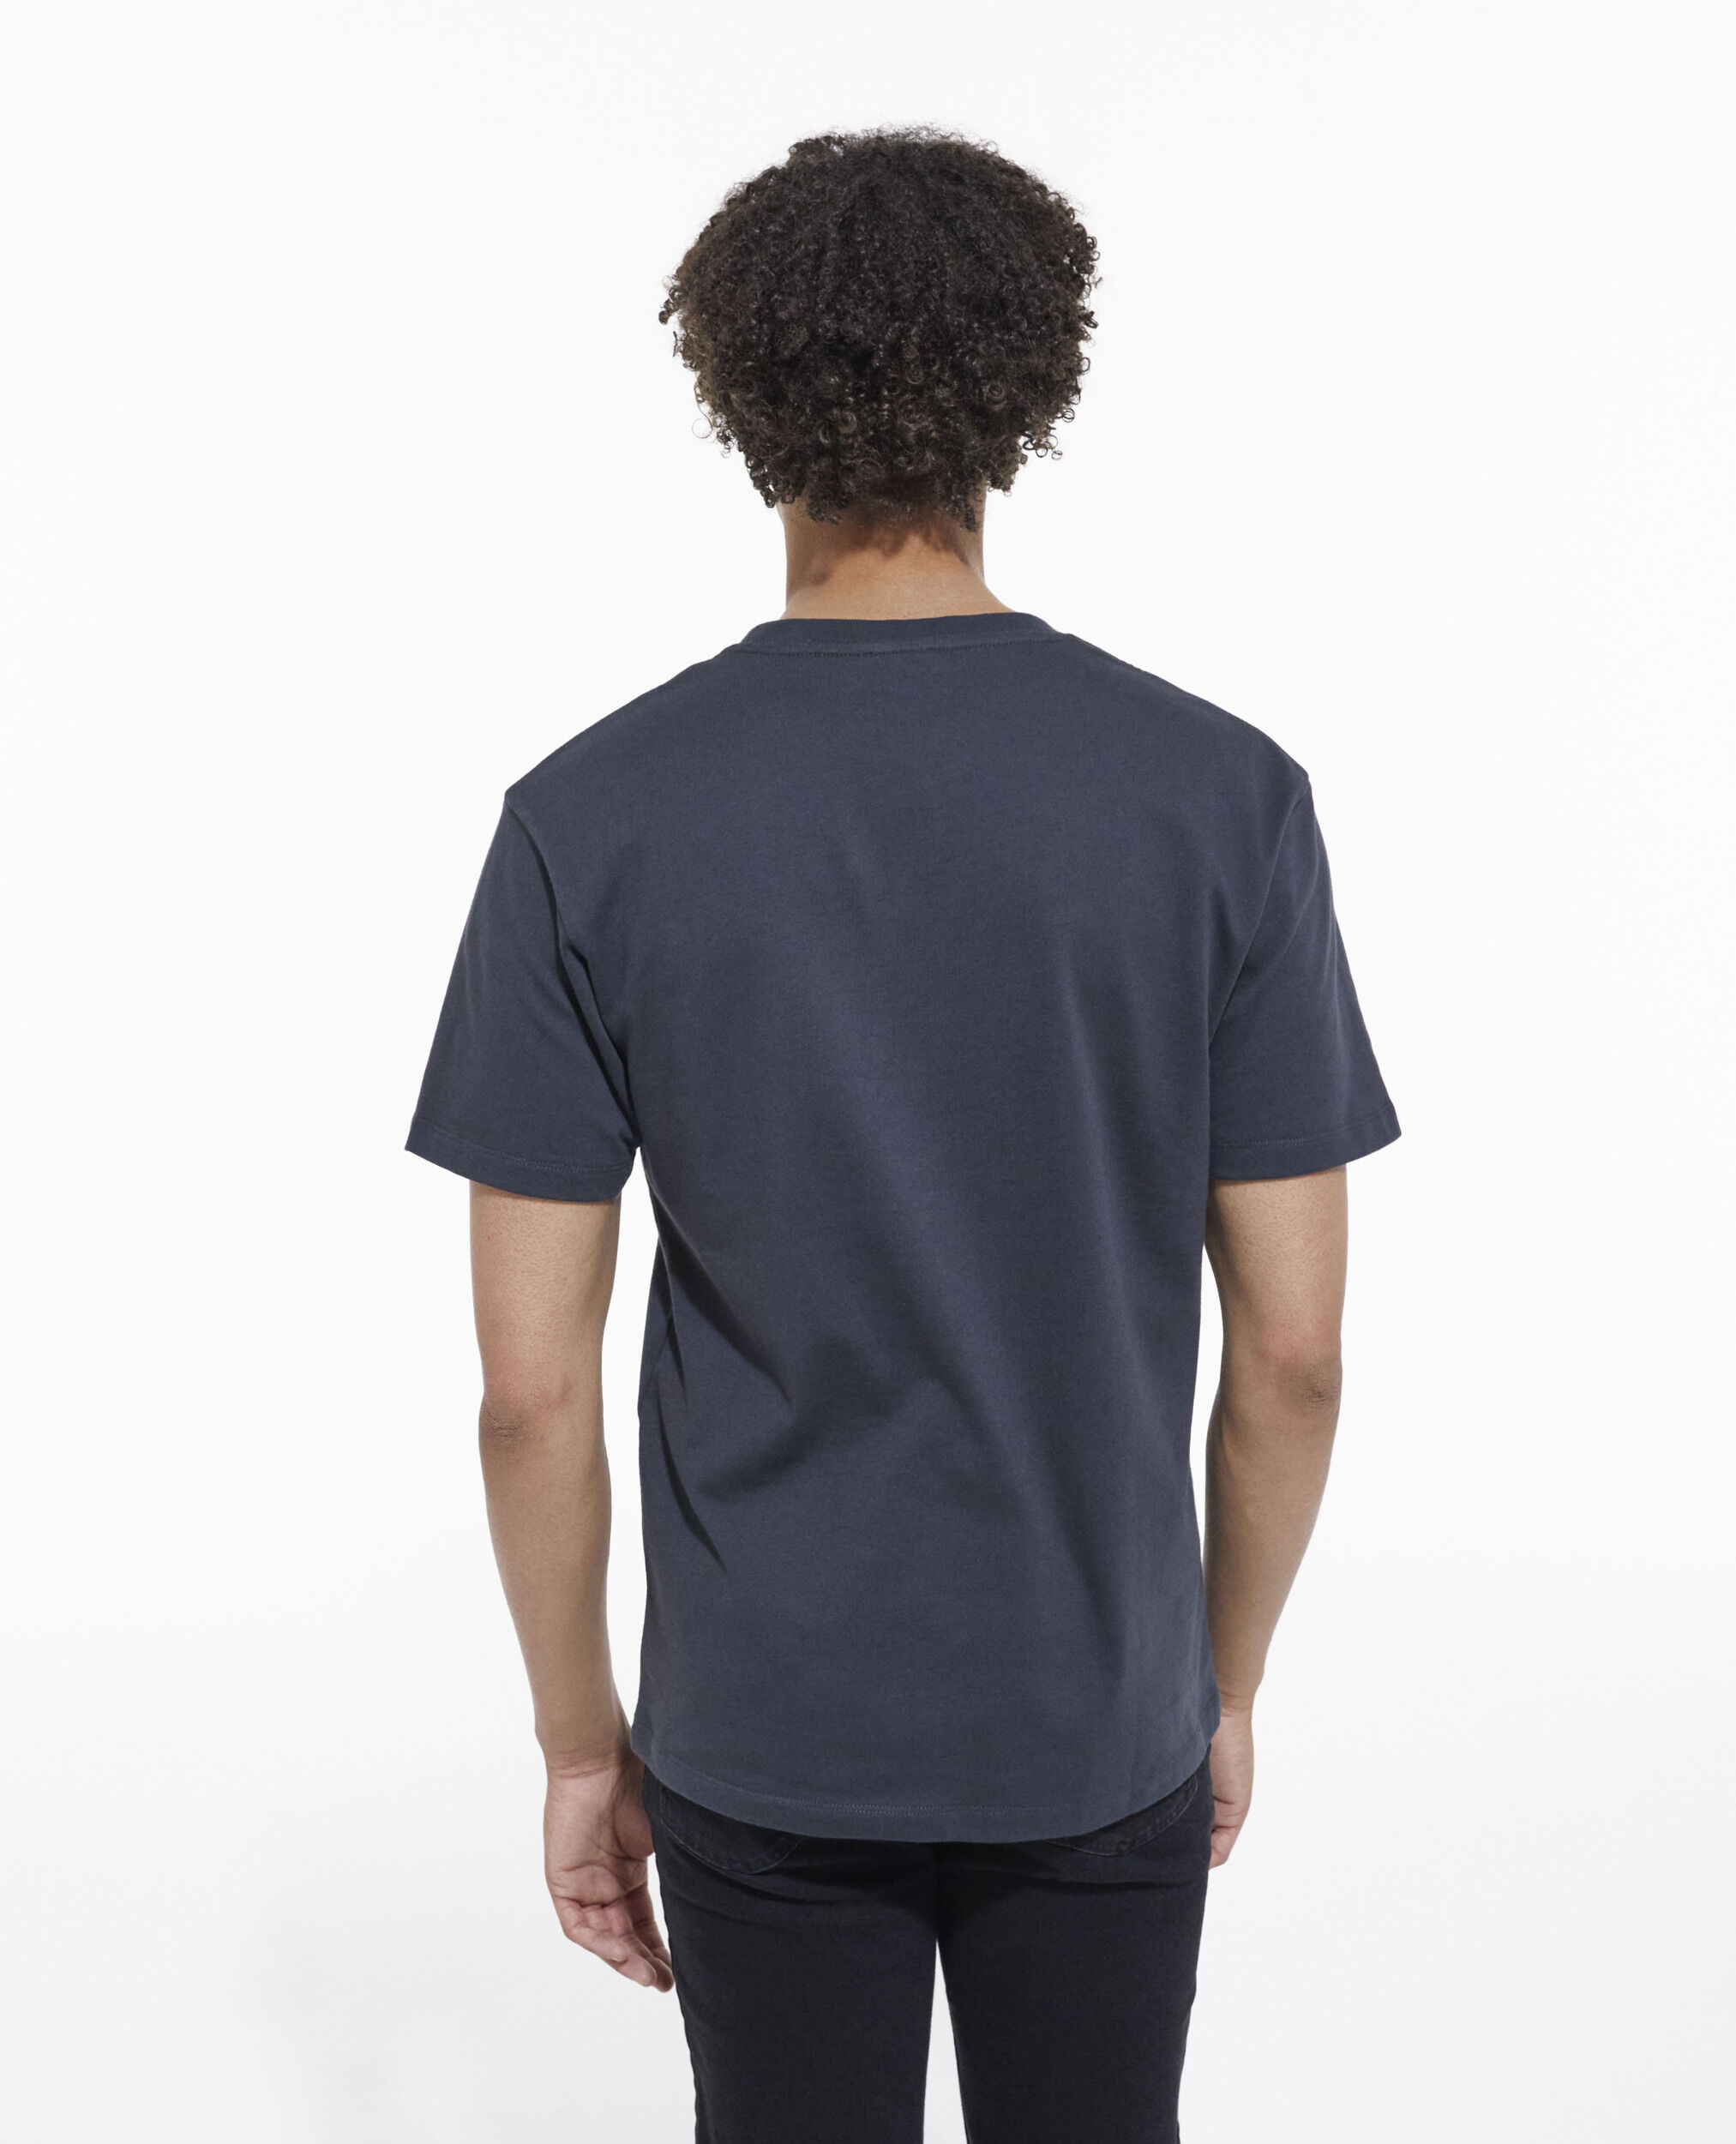 Camiseta serigrafiada negra, STONE, hi-res image number null